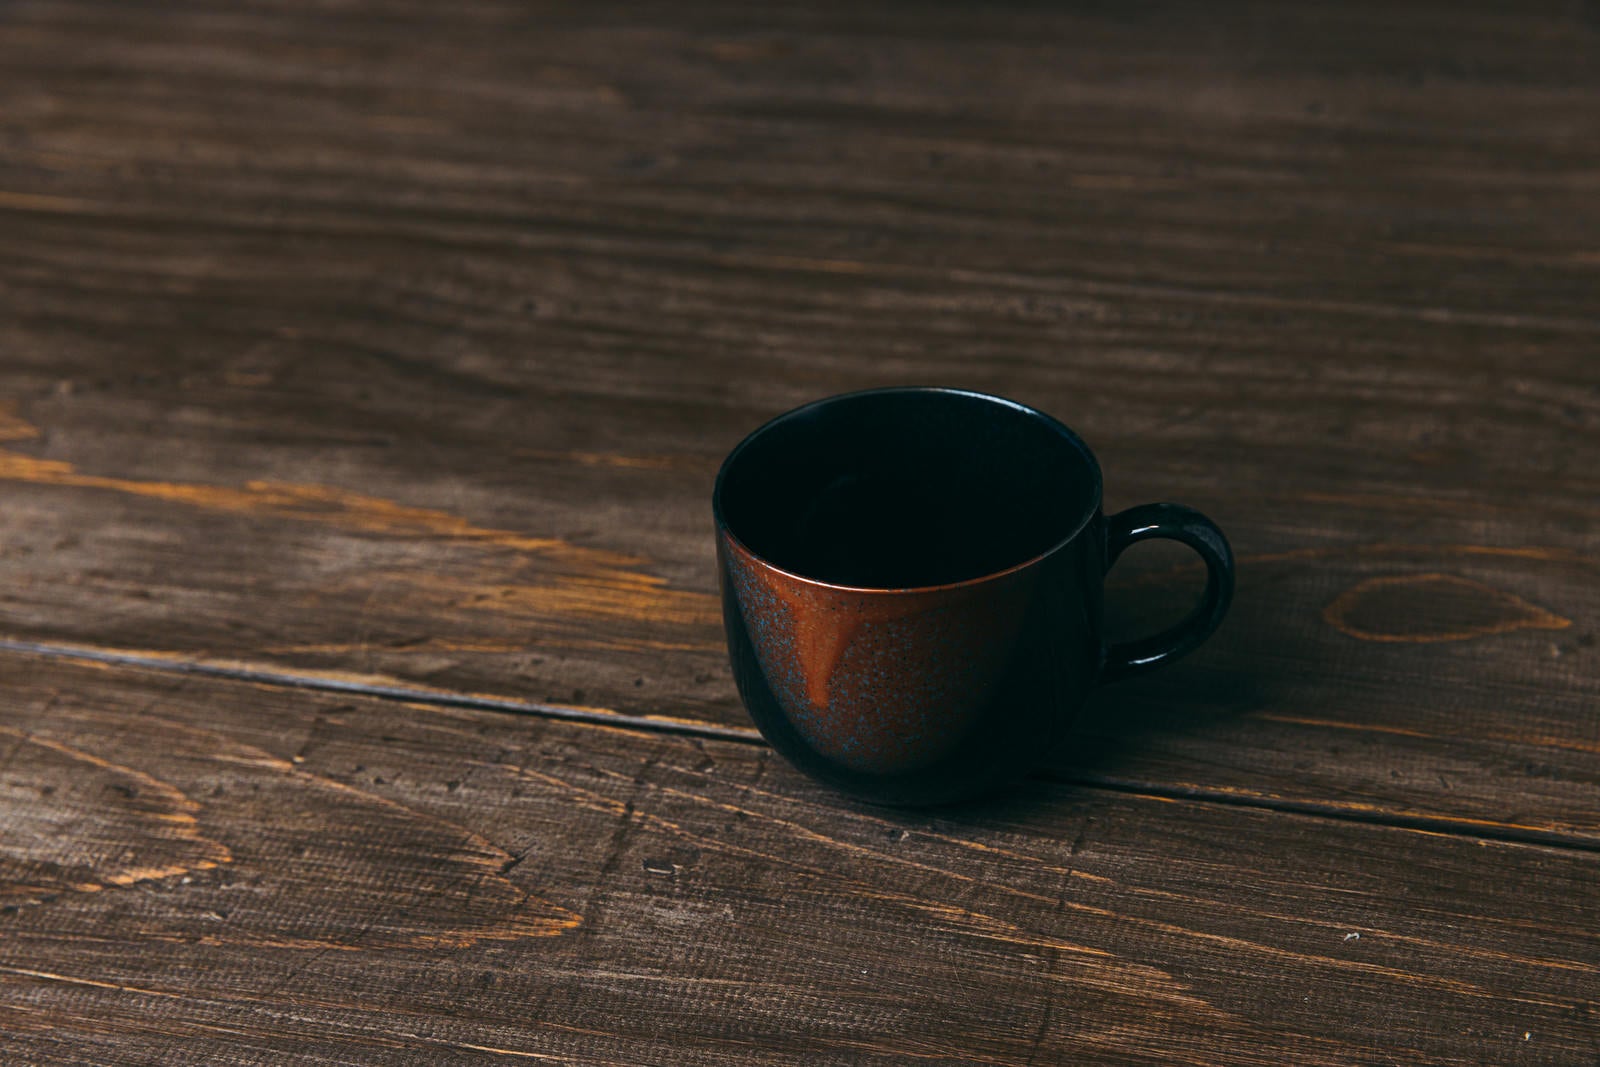 「木目調のテーブルに置かれたコーヒーカップ」の写真